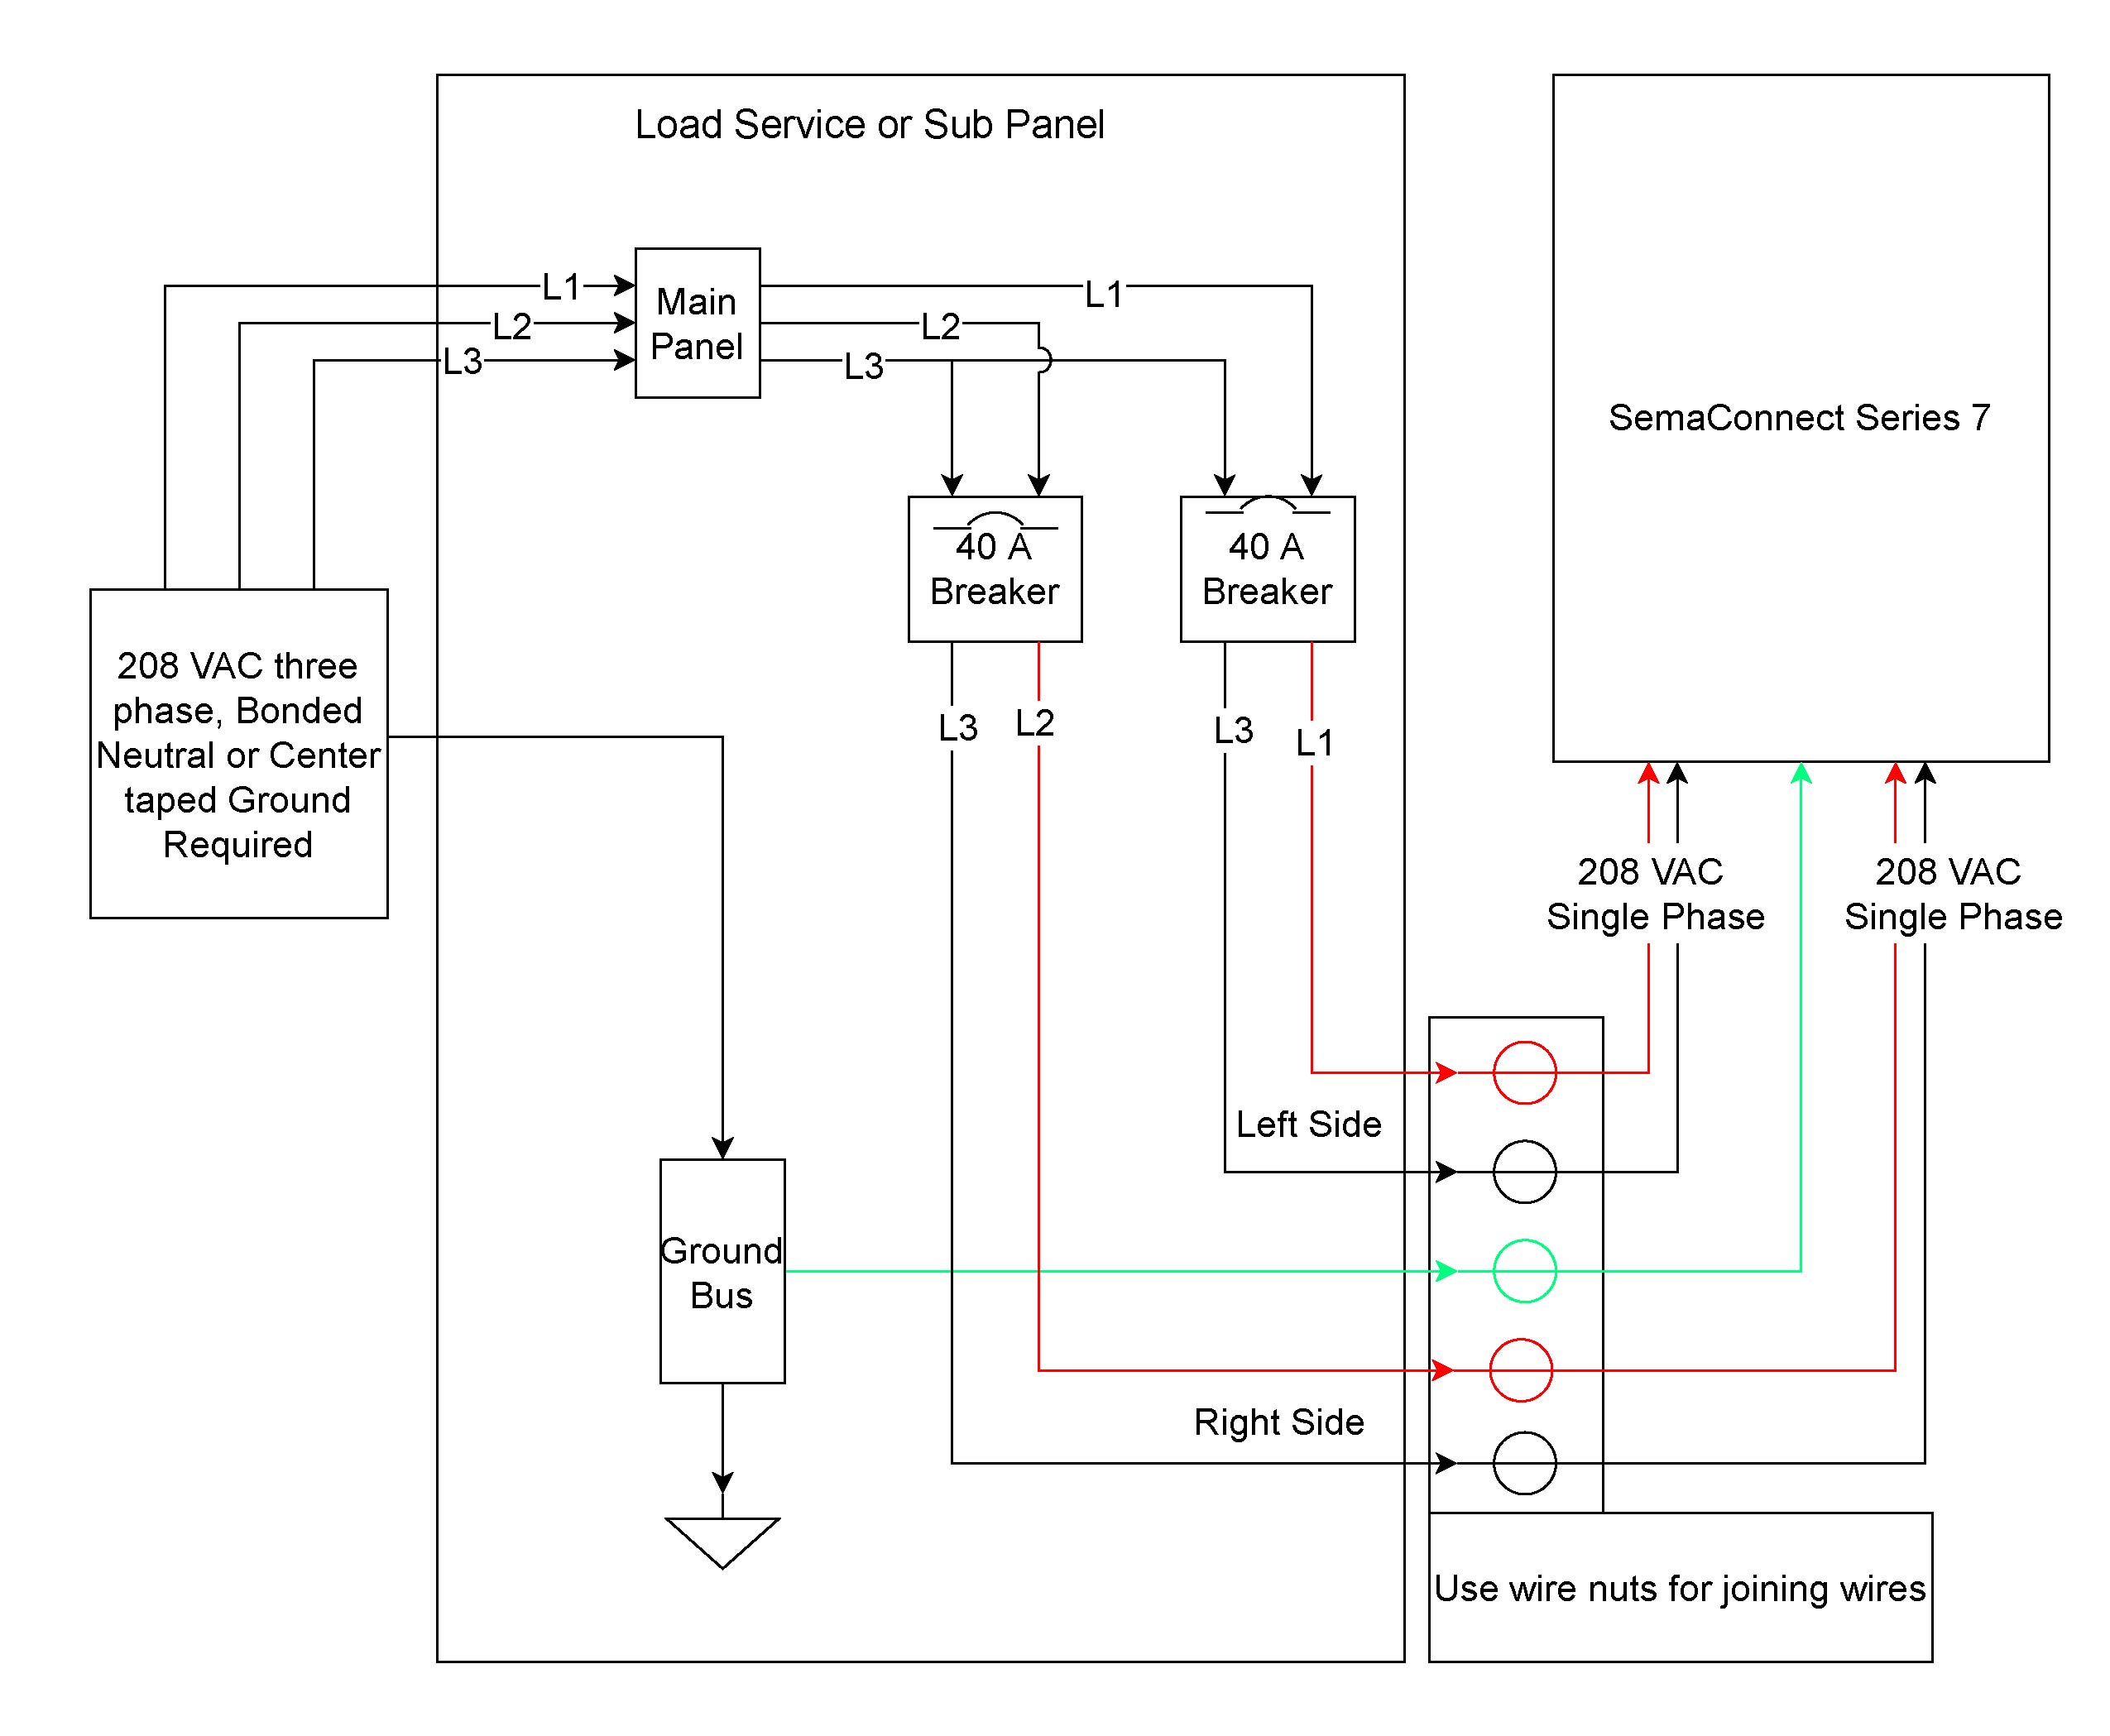 msd 6520 wiring diagram